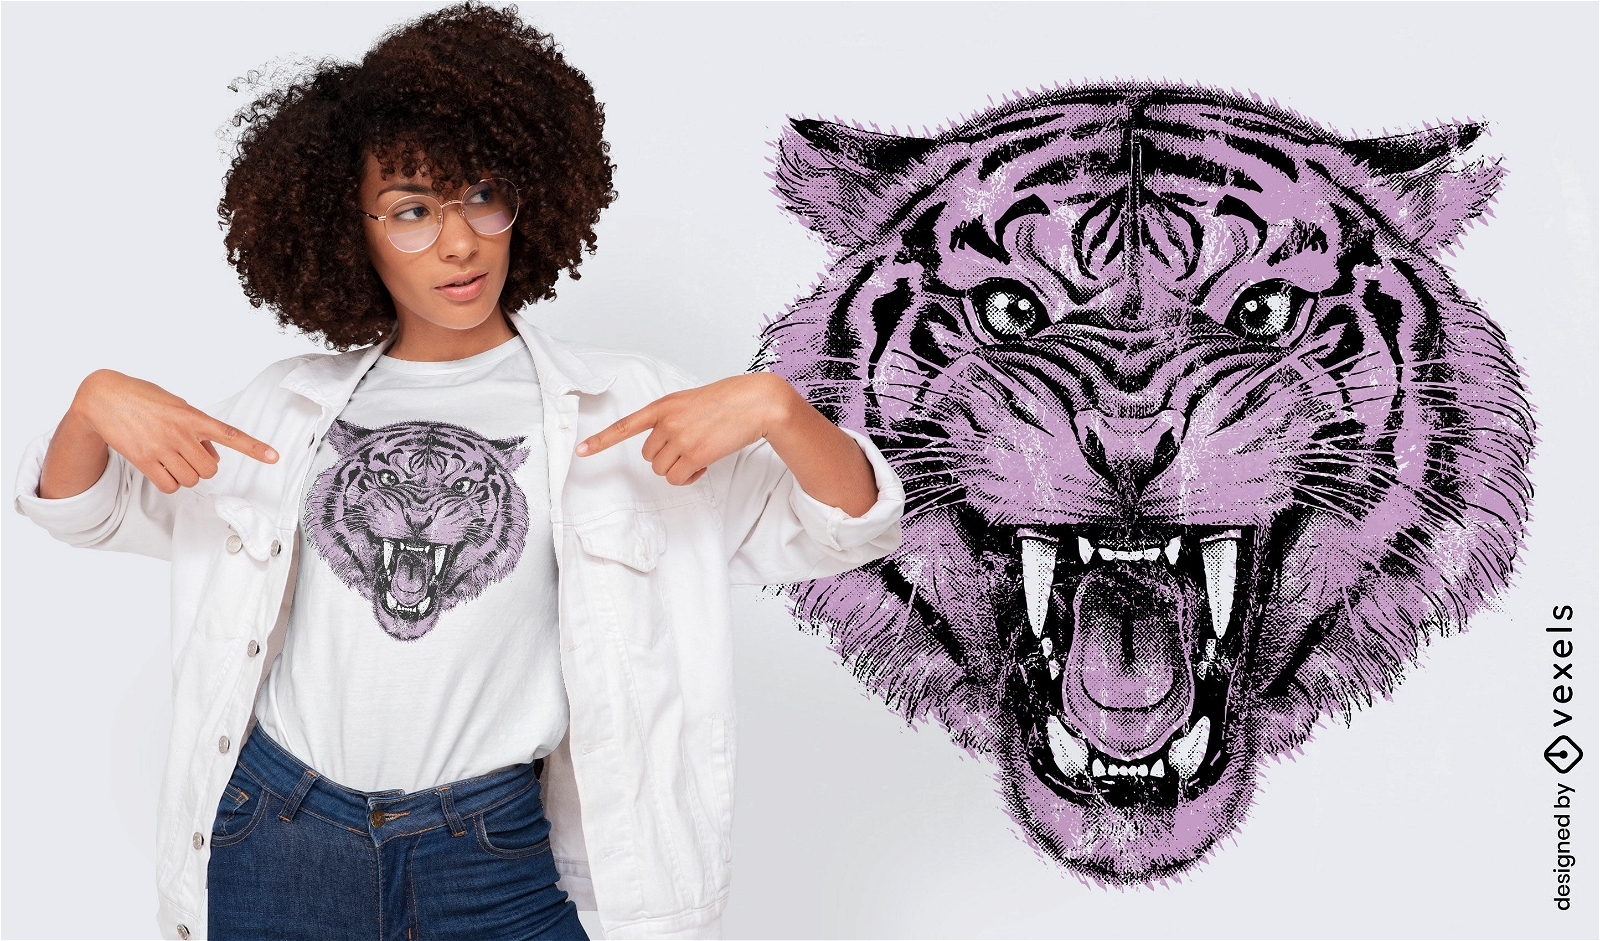 Br?llendes T-Shirt-Design mit lila Tigertieren